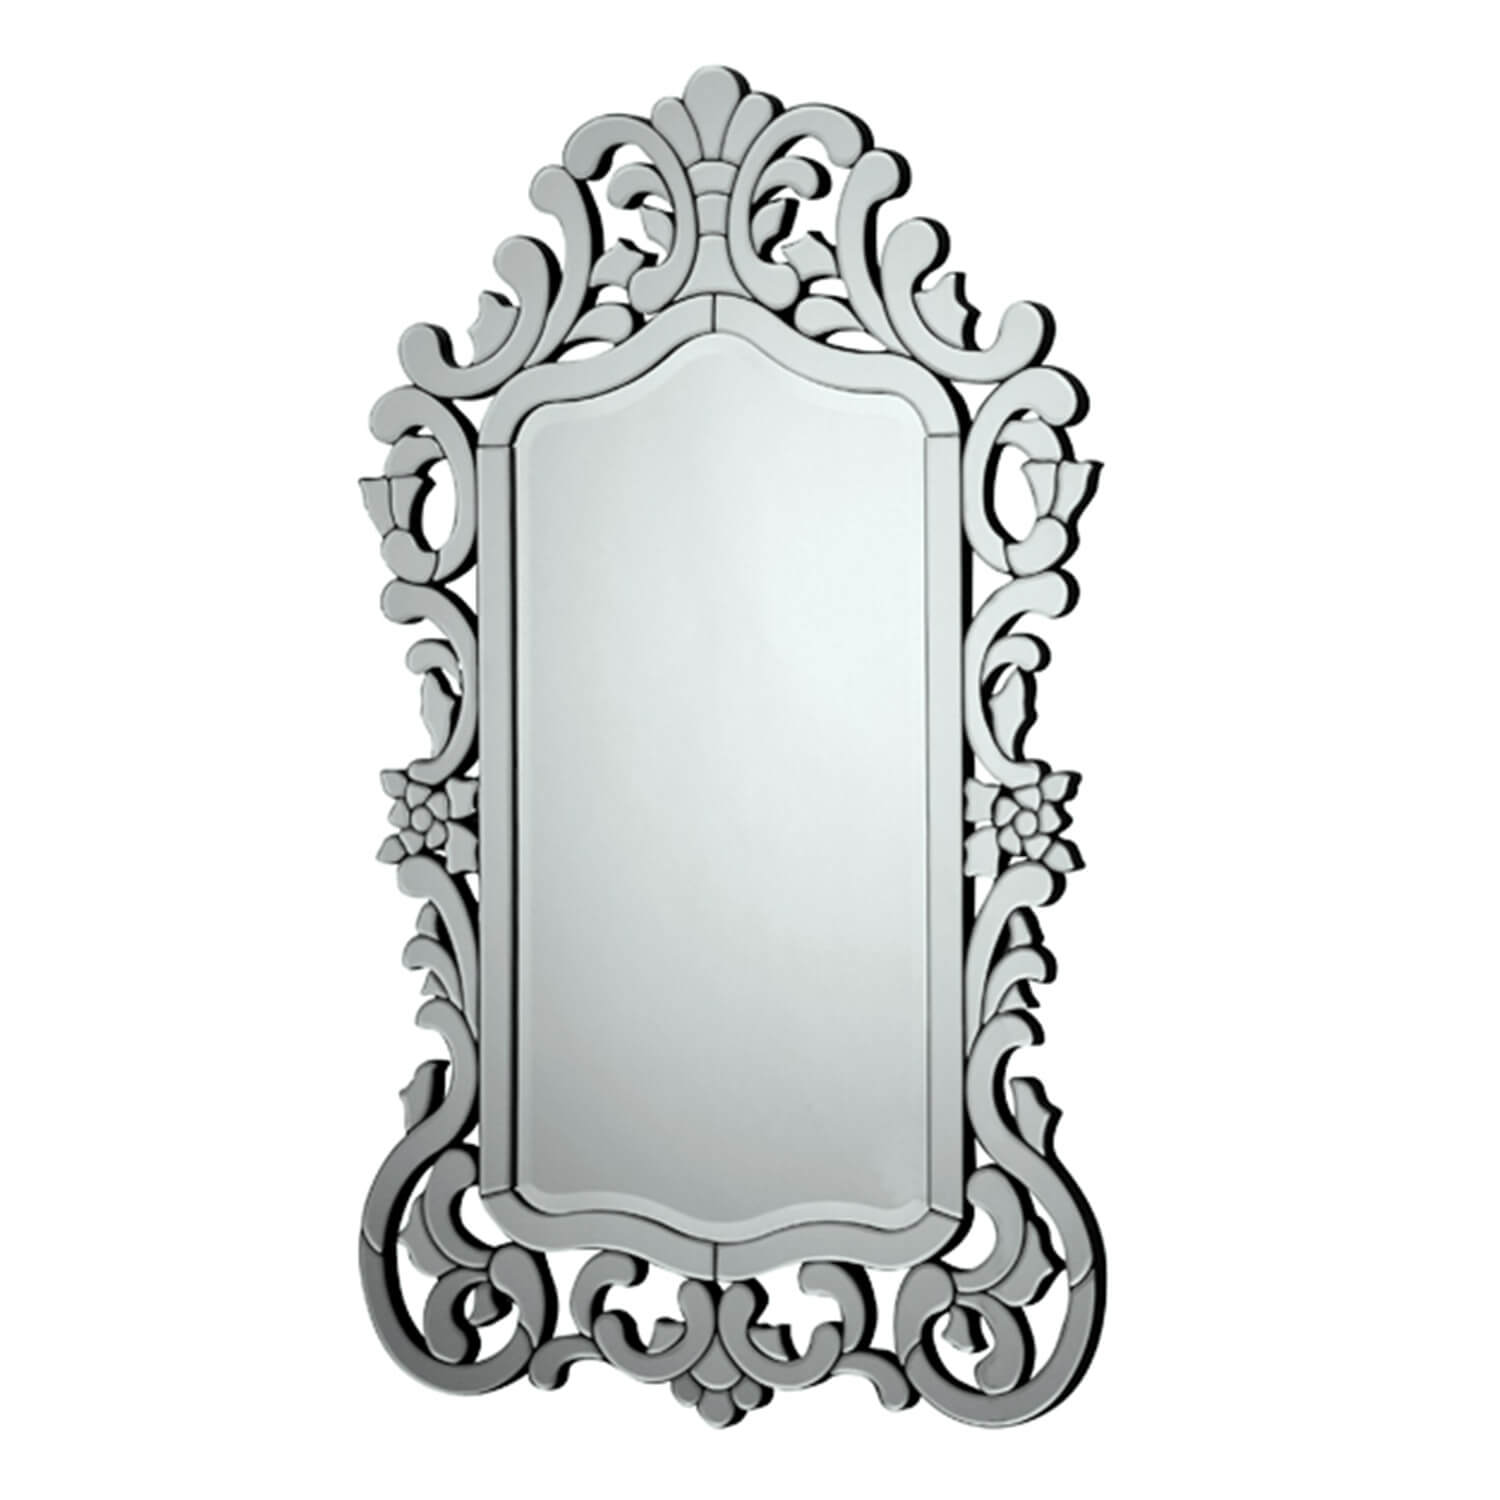 Cremona mirror